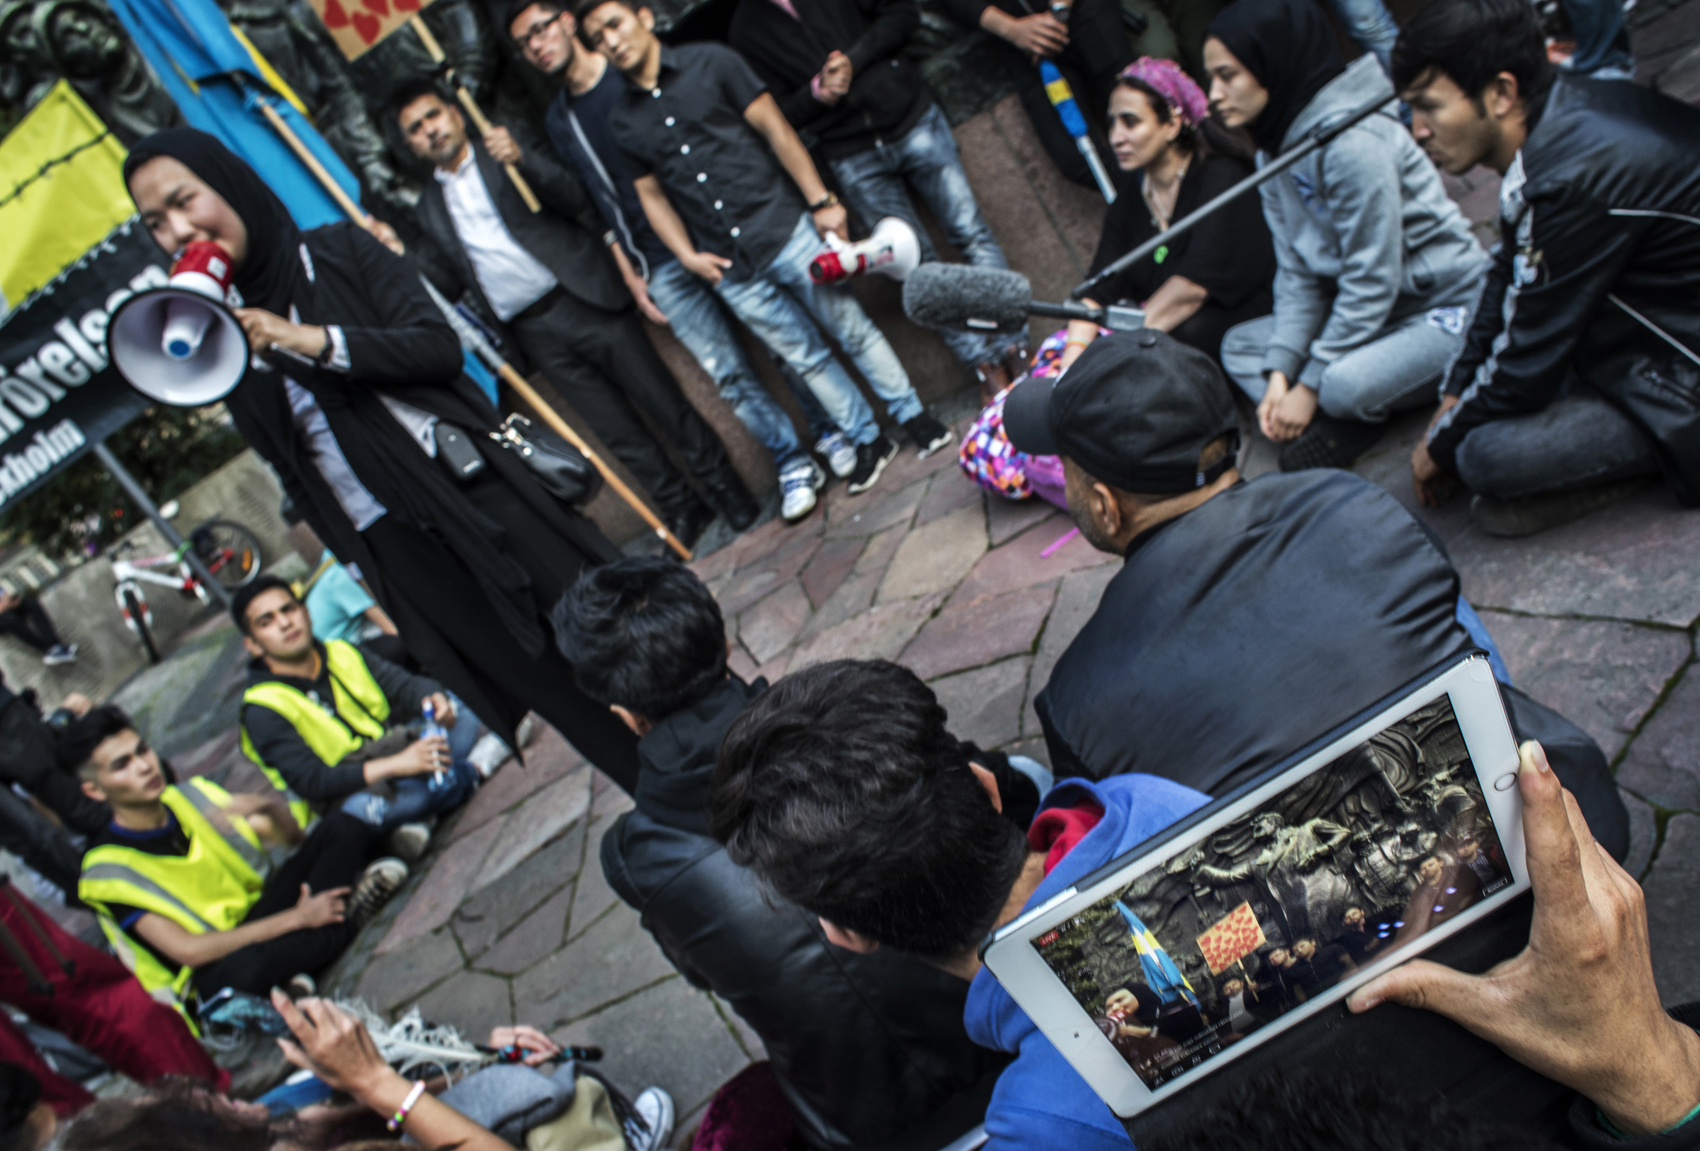 Demonstration against deportation of Afghan minors in Sweden.